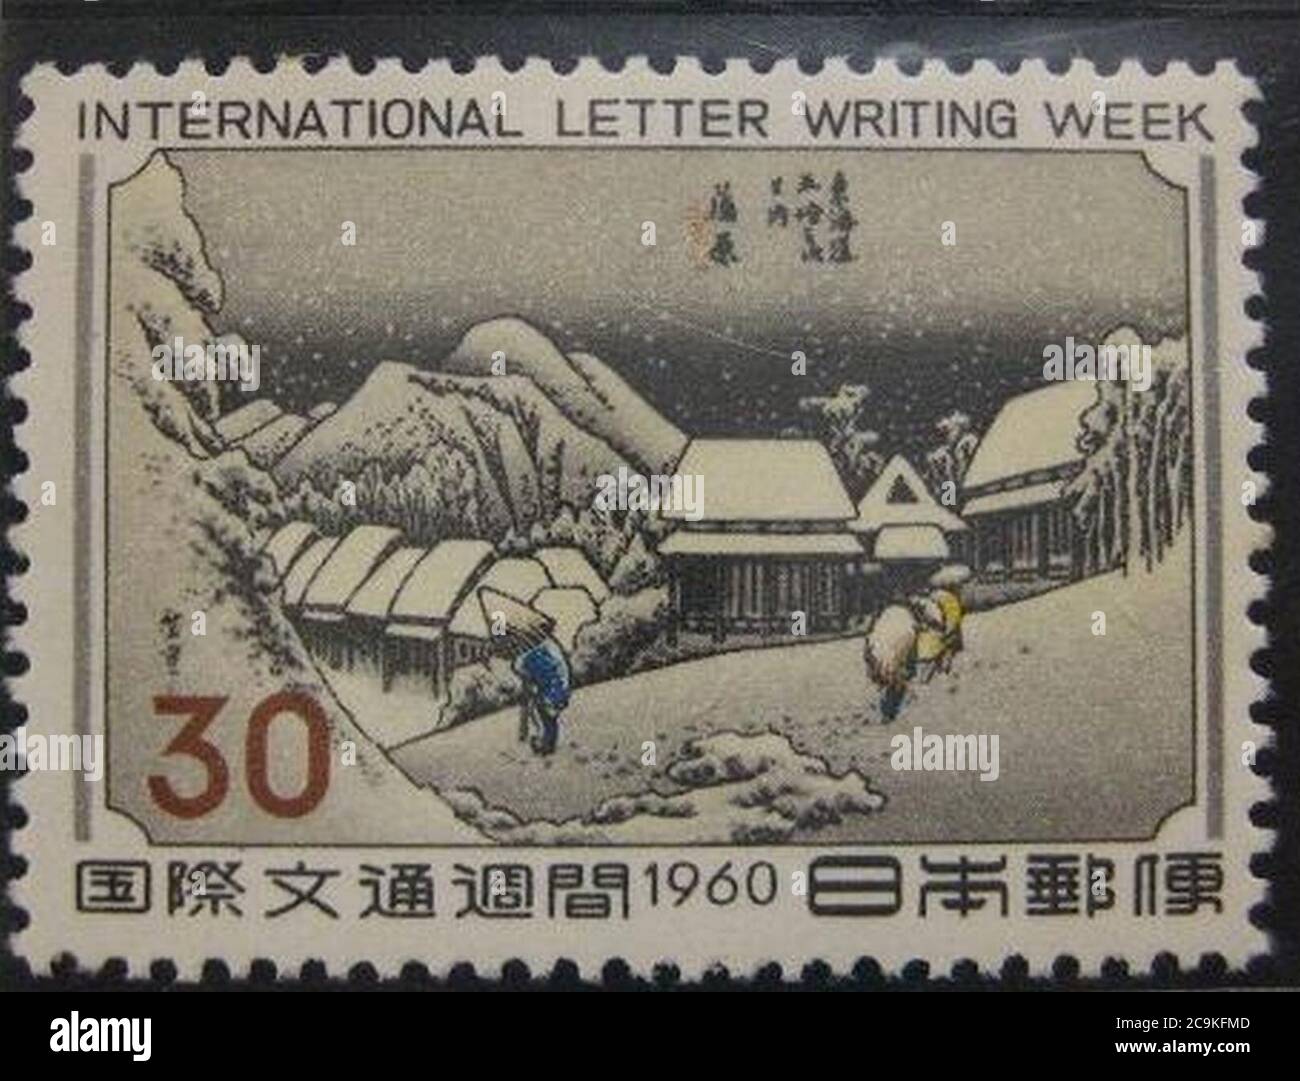 Japon Timbre en 1960 semaine internationale de rédaction de lettre. Banque D'Images